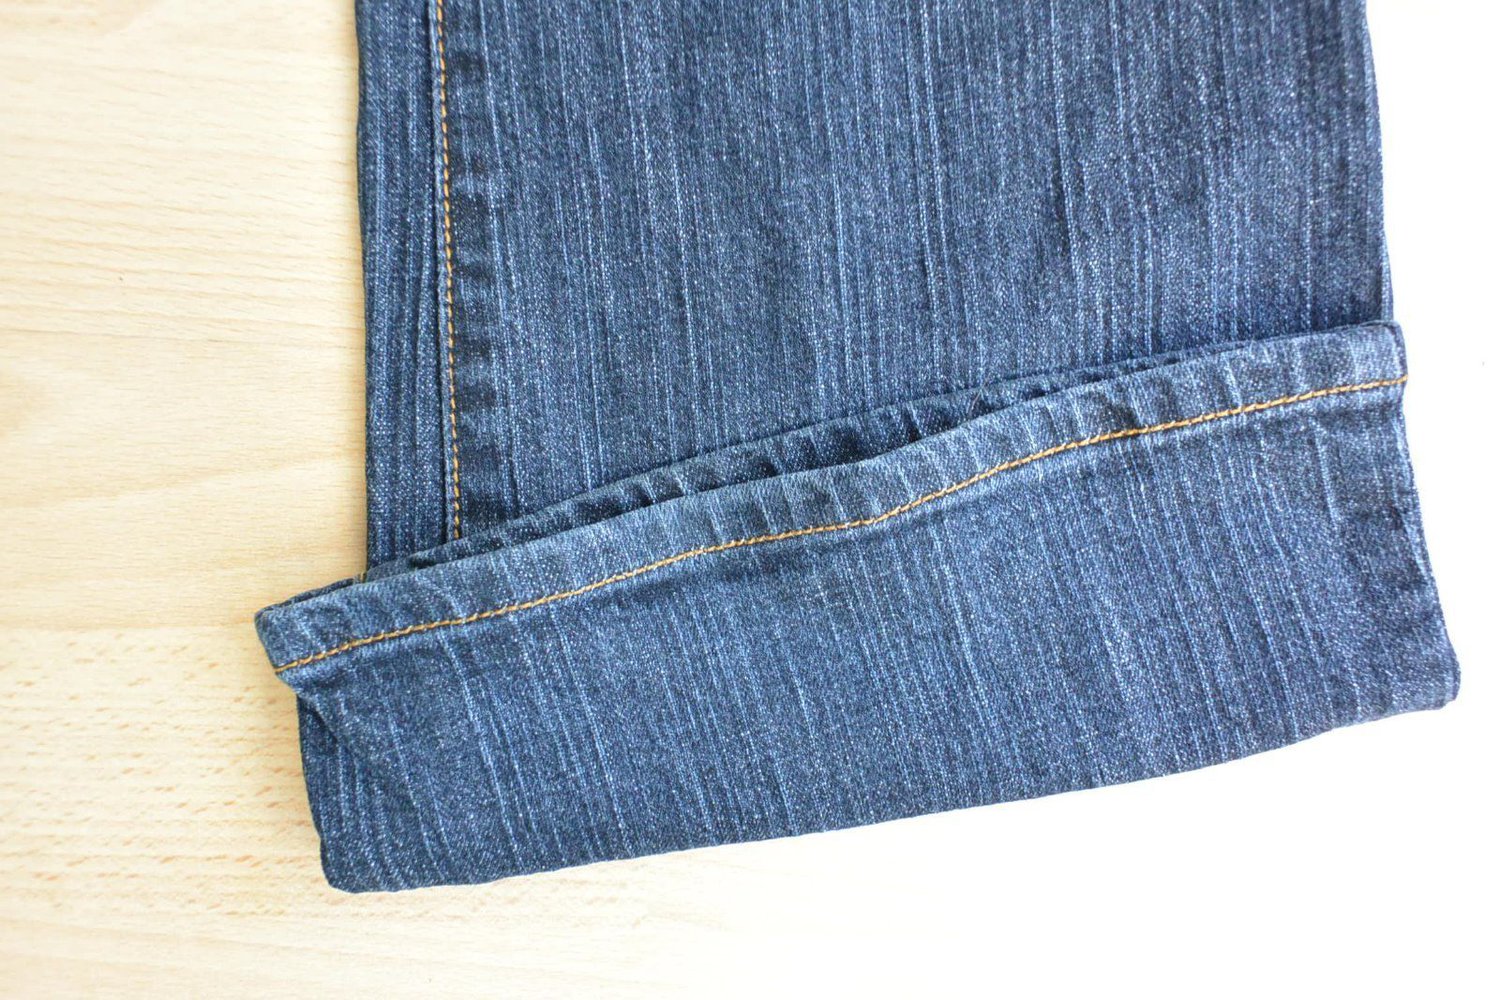 Schicke Jeans von CHOR, boot-cut, Damen, dunkelblau, Grösse 36